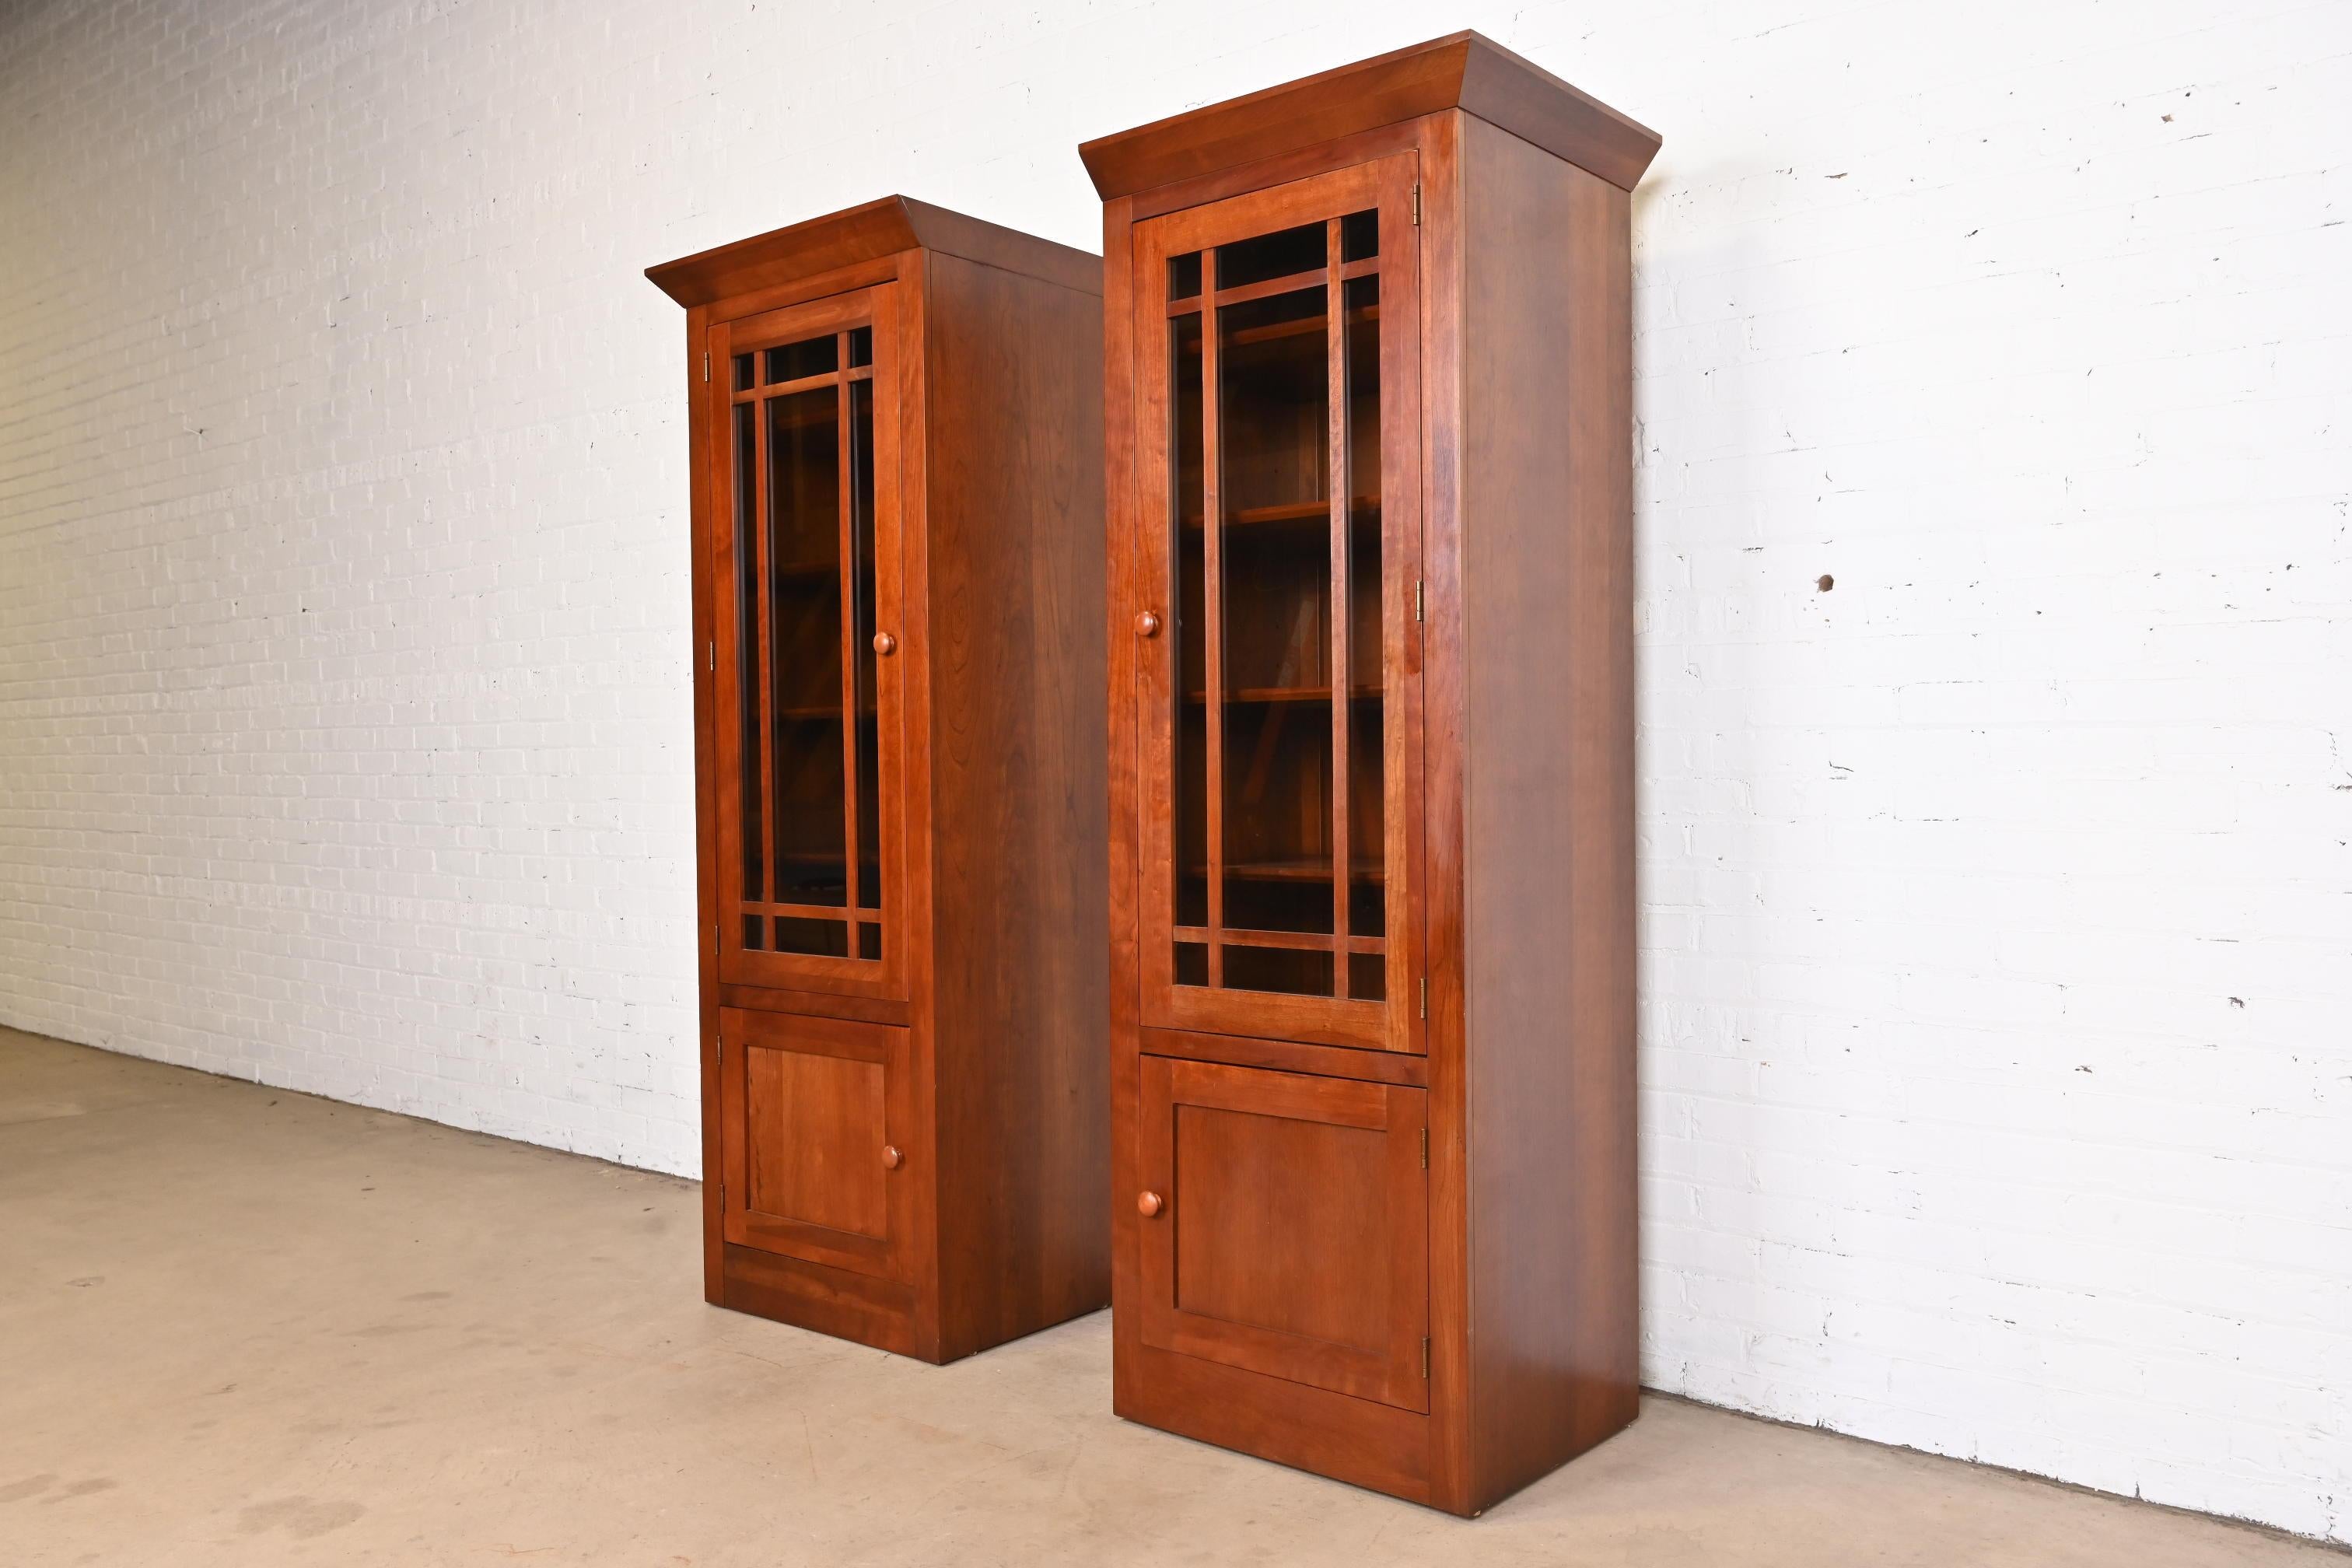 Une superbe paire d'étagères ou de meubles de rangement de style Shakers ou Arts & Crafts.

Par Ethan Allen, collection 